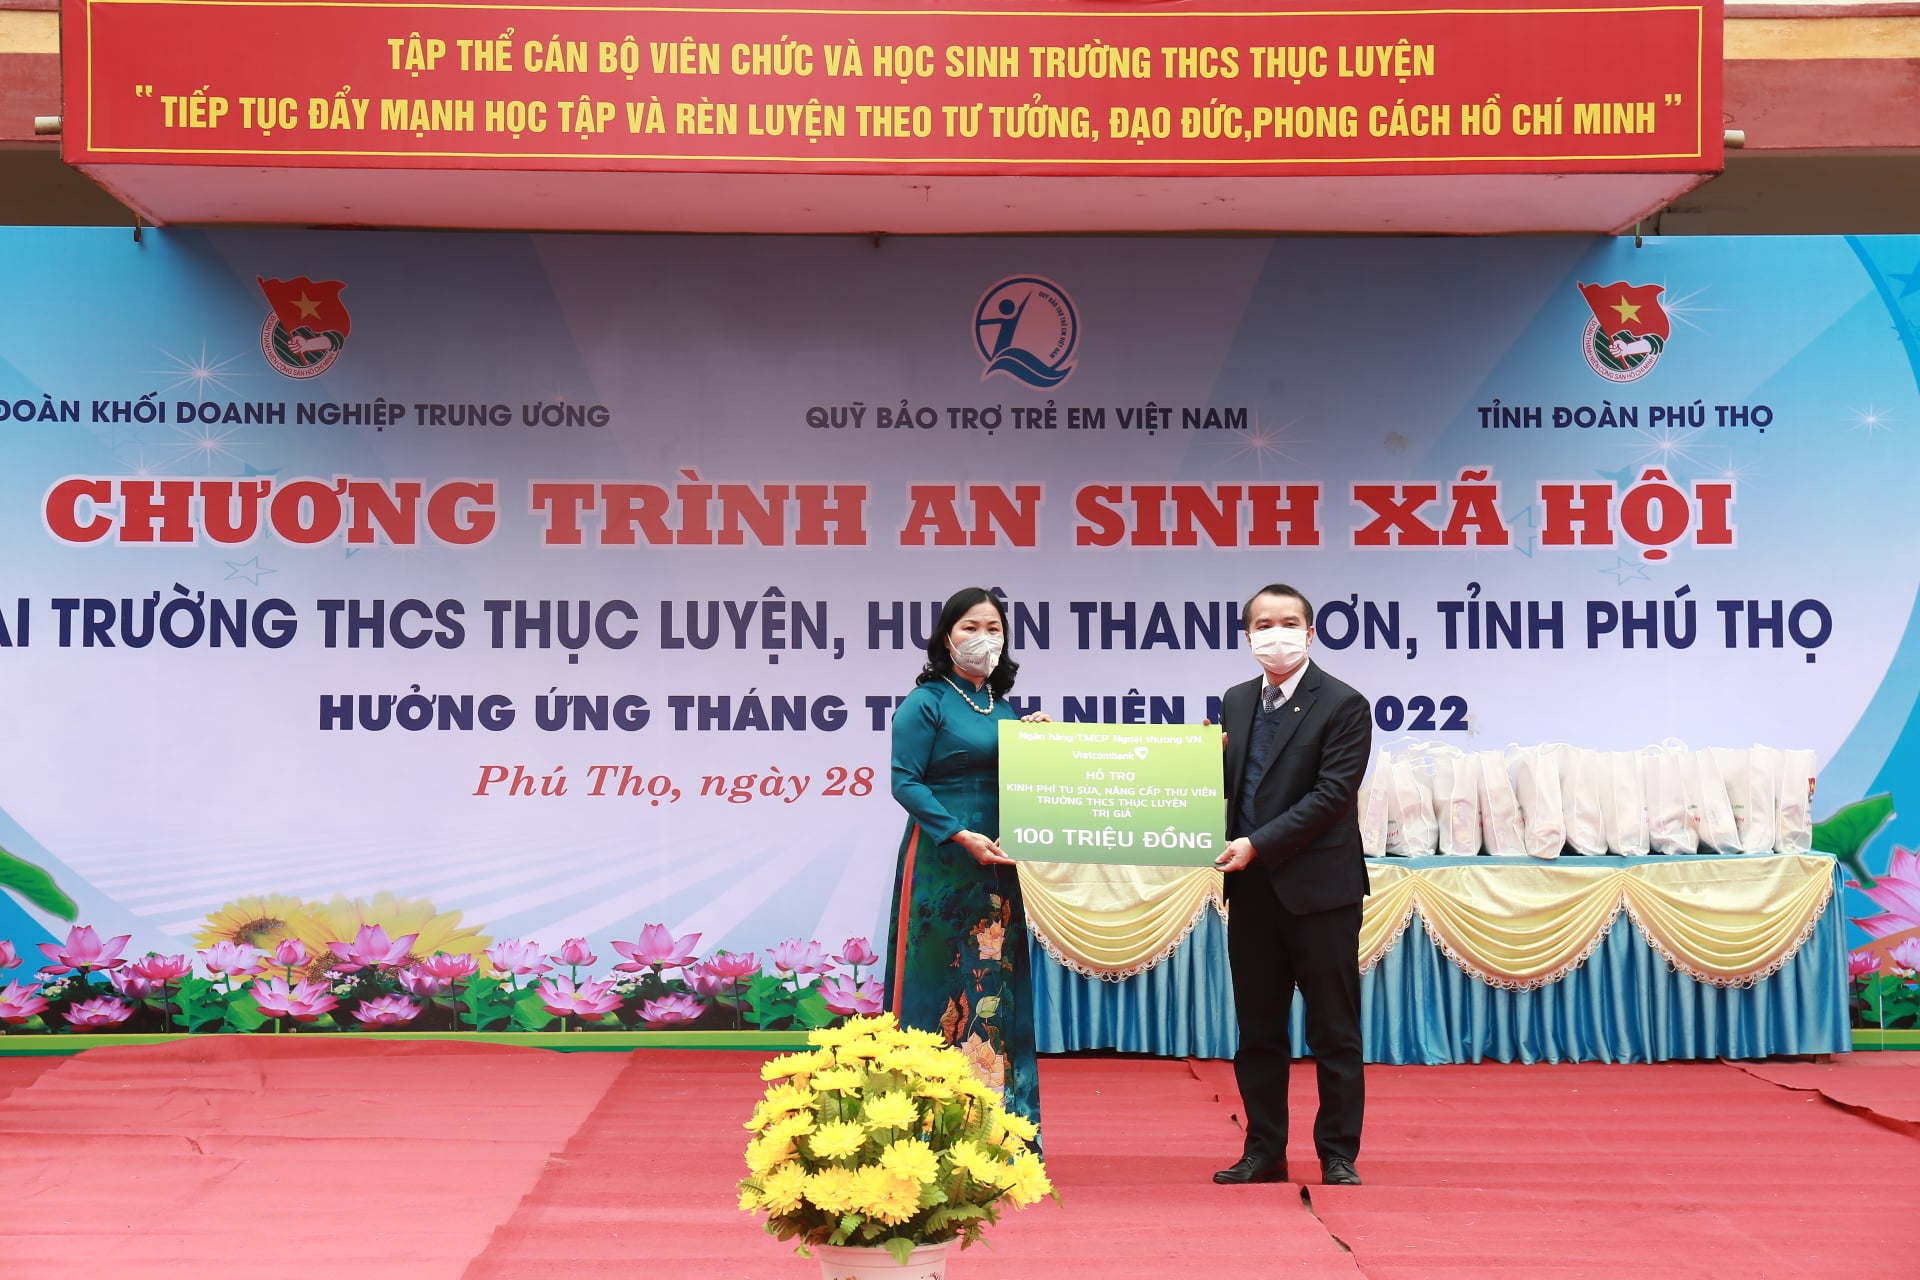 Lãnh đạo Ngân hàng TMCP Ngoại thương Việt Nam trao biển hỗ trợ kinh phí tu sửa, nâng cấp thư viên Trường cấp 2 trên địa bàn tỉnh Phú Thọ, trị giá 100 triệu đồng